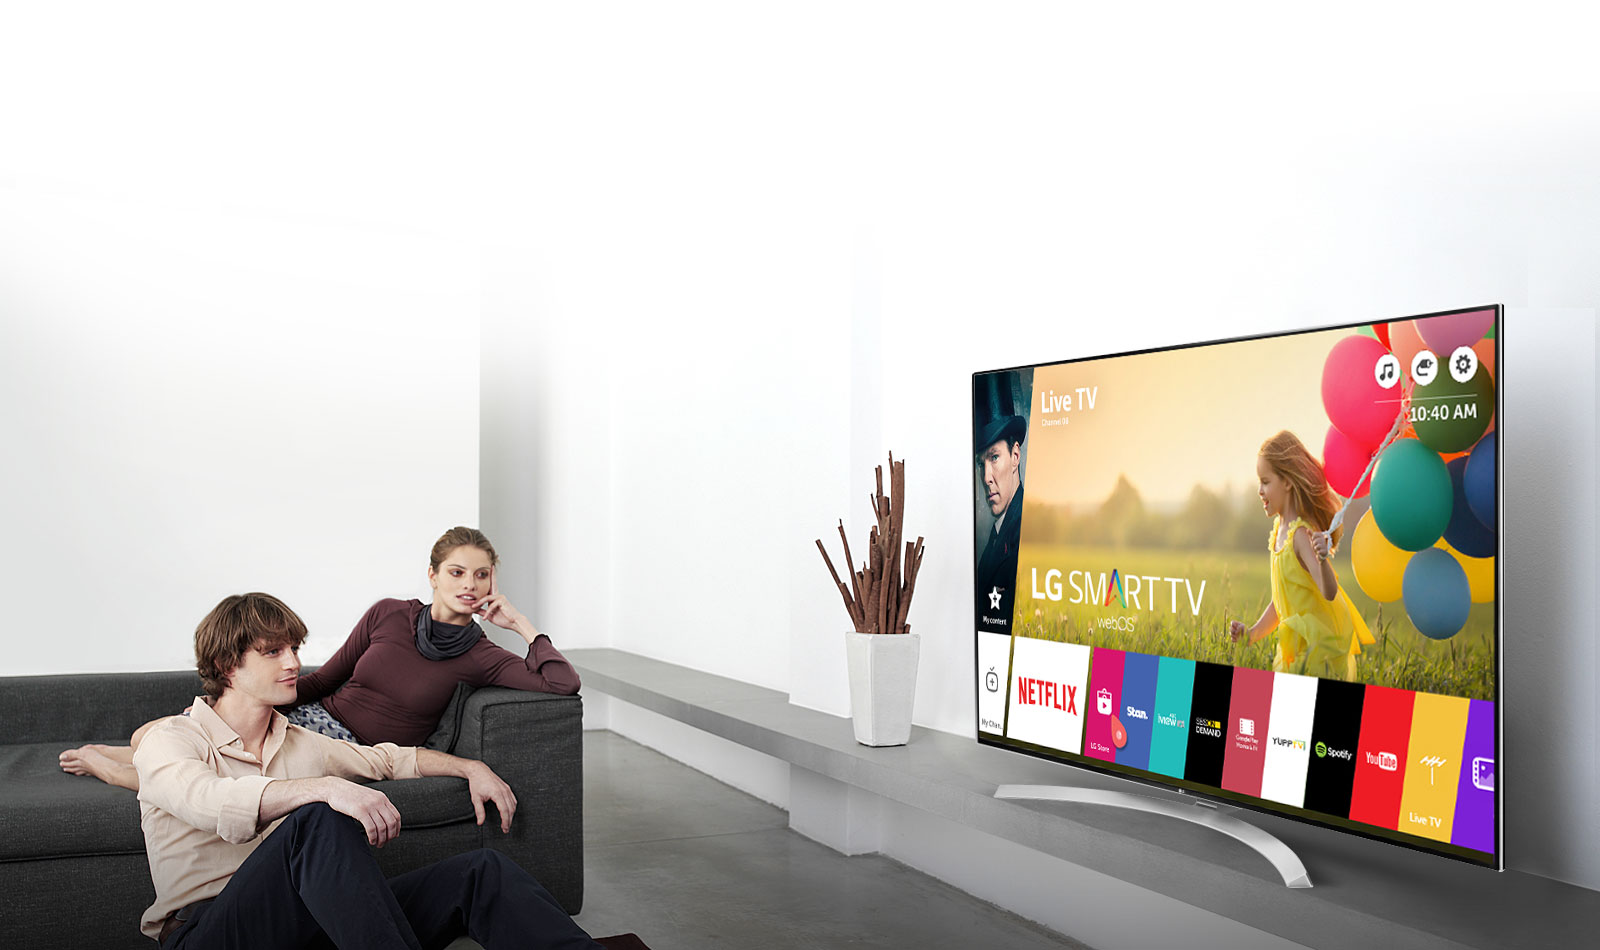 Gezielte Werbung wird auf LG-Fernsehern erscheinen: Das Unternehmen wird Daten über seine Benutzer sammeln